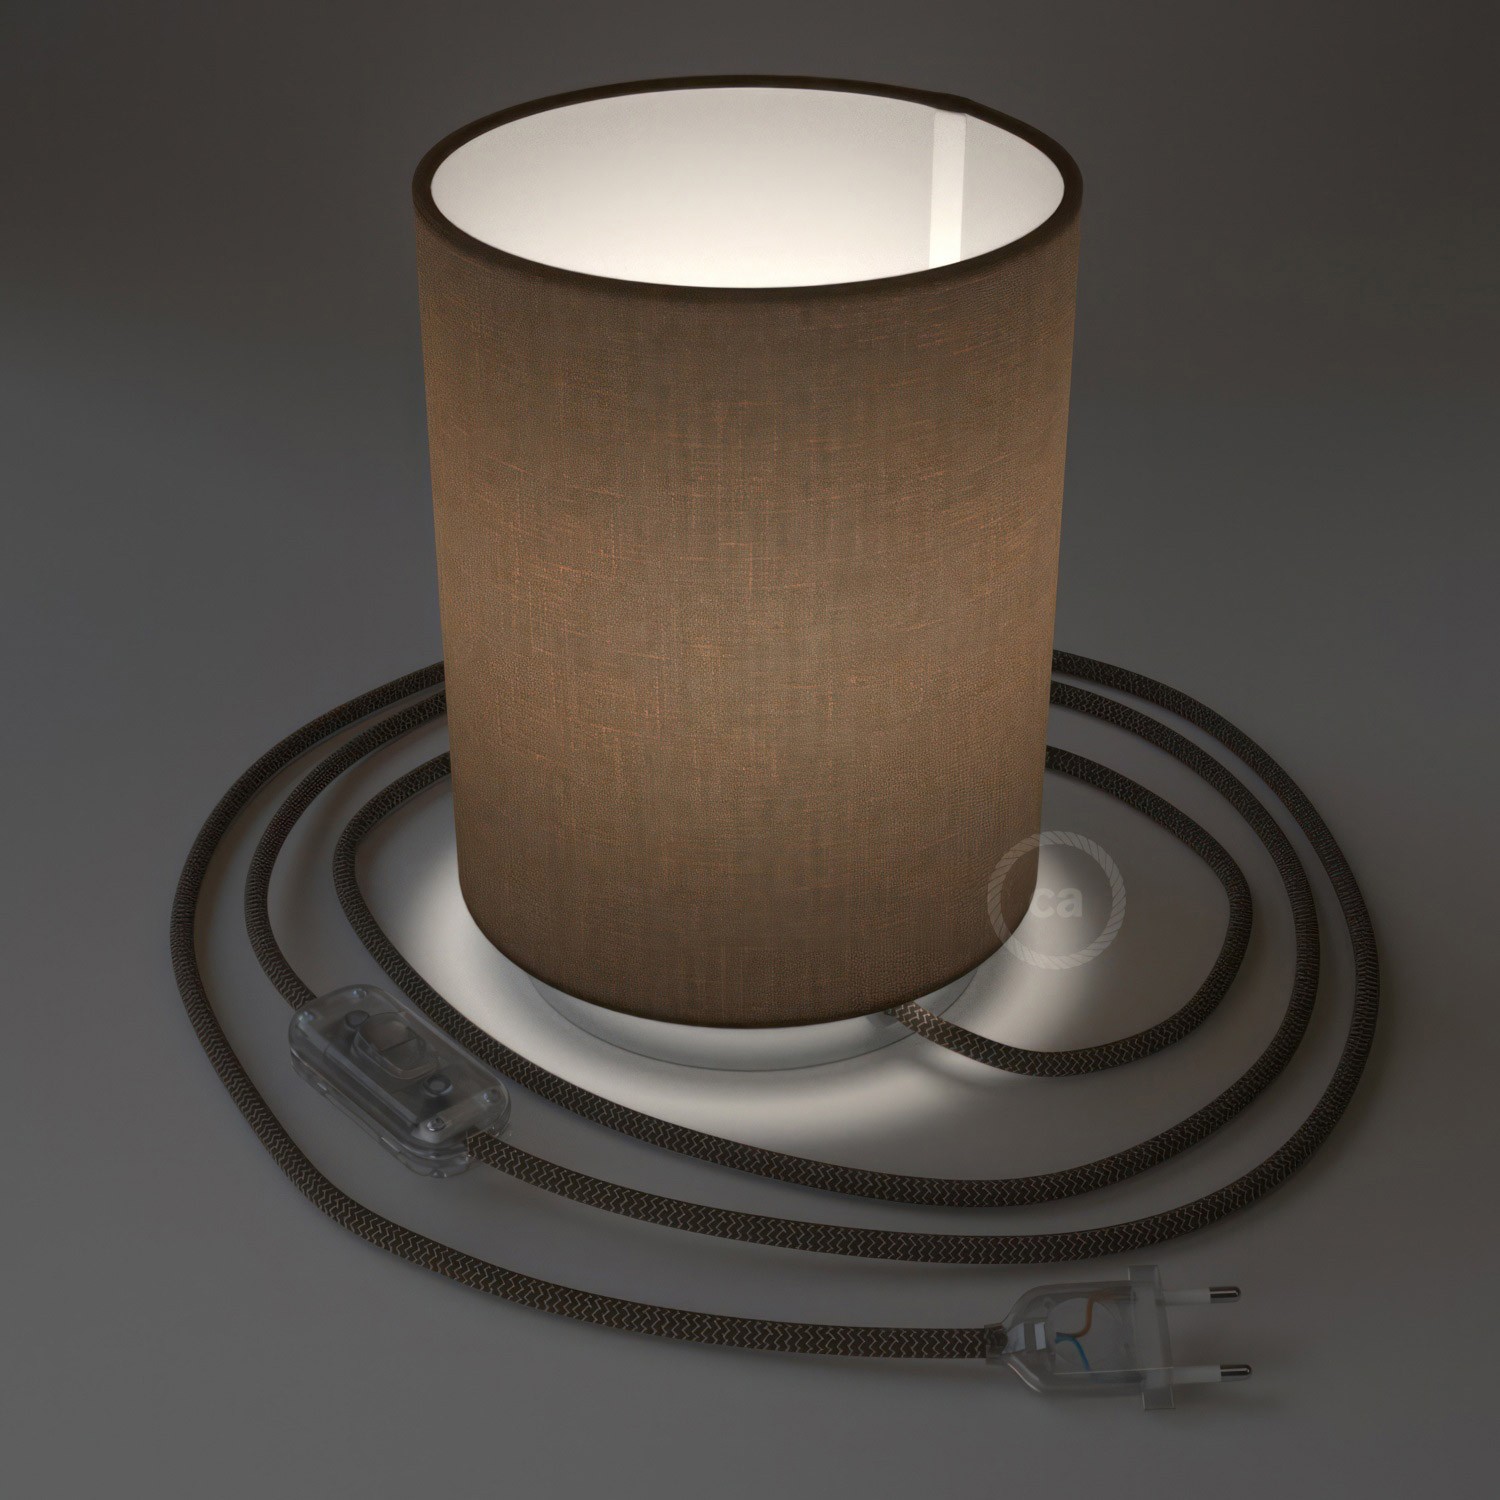 Lampe Posaluce en métal avec abat-jour Cilindro Camelot marron, avec câble textile, interrupteur et prise bipolaire